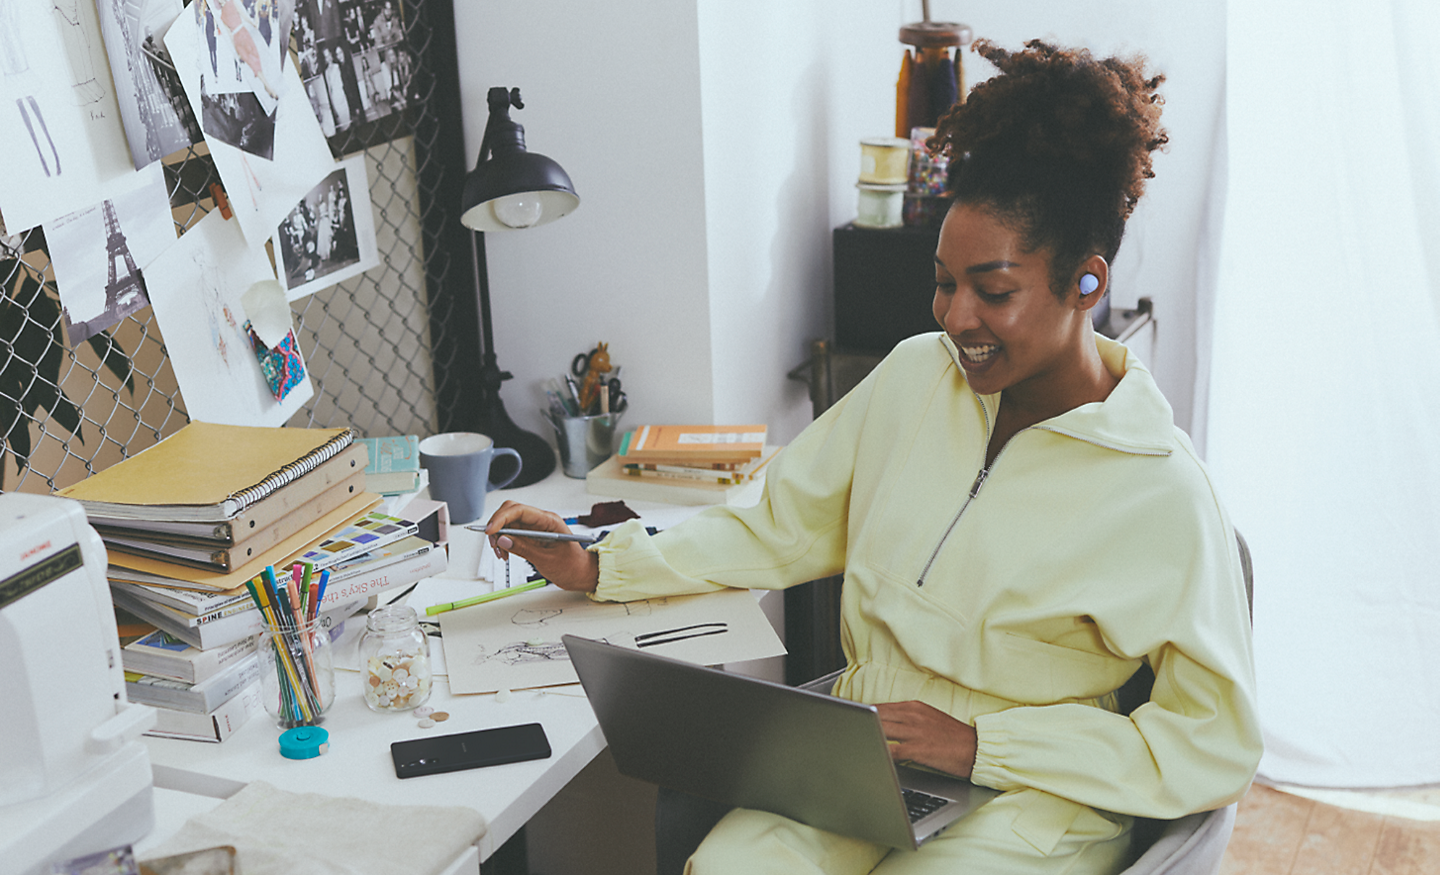 圖片顯示一名女子坐在繁忙的辦公桌前使用手提電腦並佩戴薰衣草色 WF-C700N 無線降噪耳機